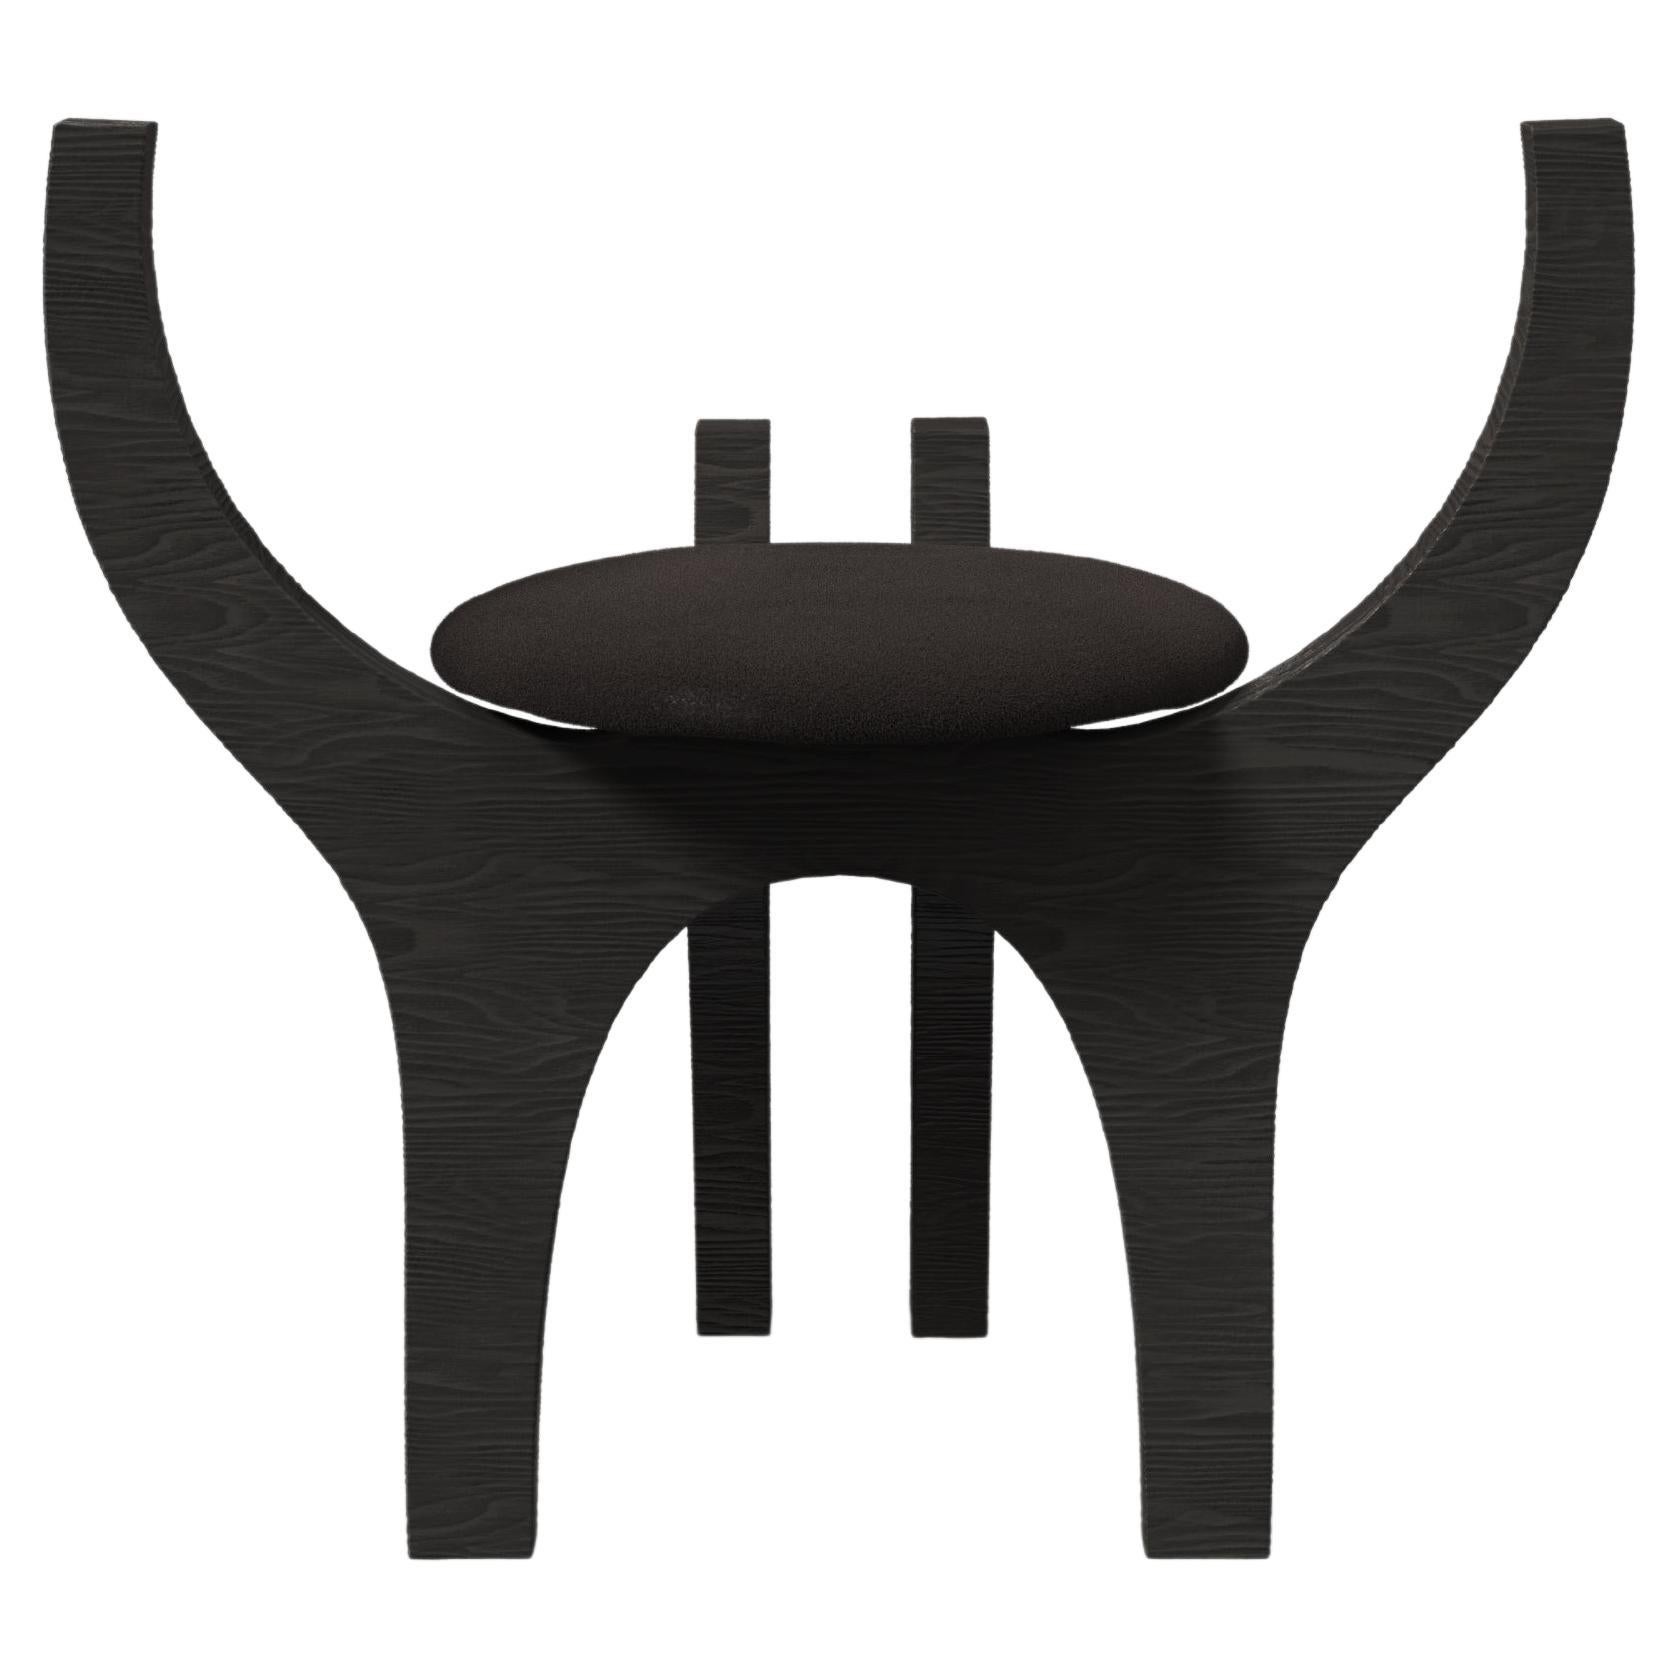 Contemporary Limited Edition Black Wood Stool, Zero V1 by Edizione Limitata